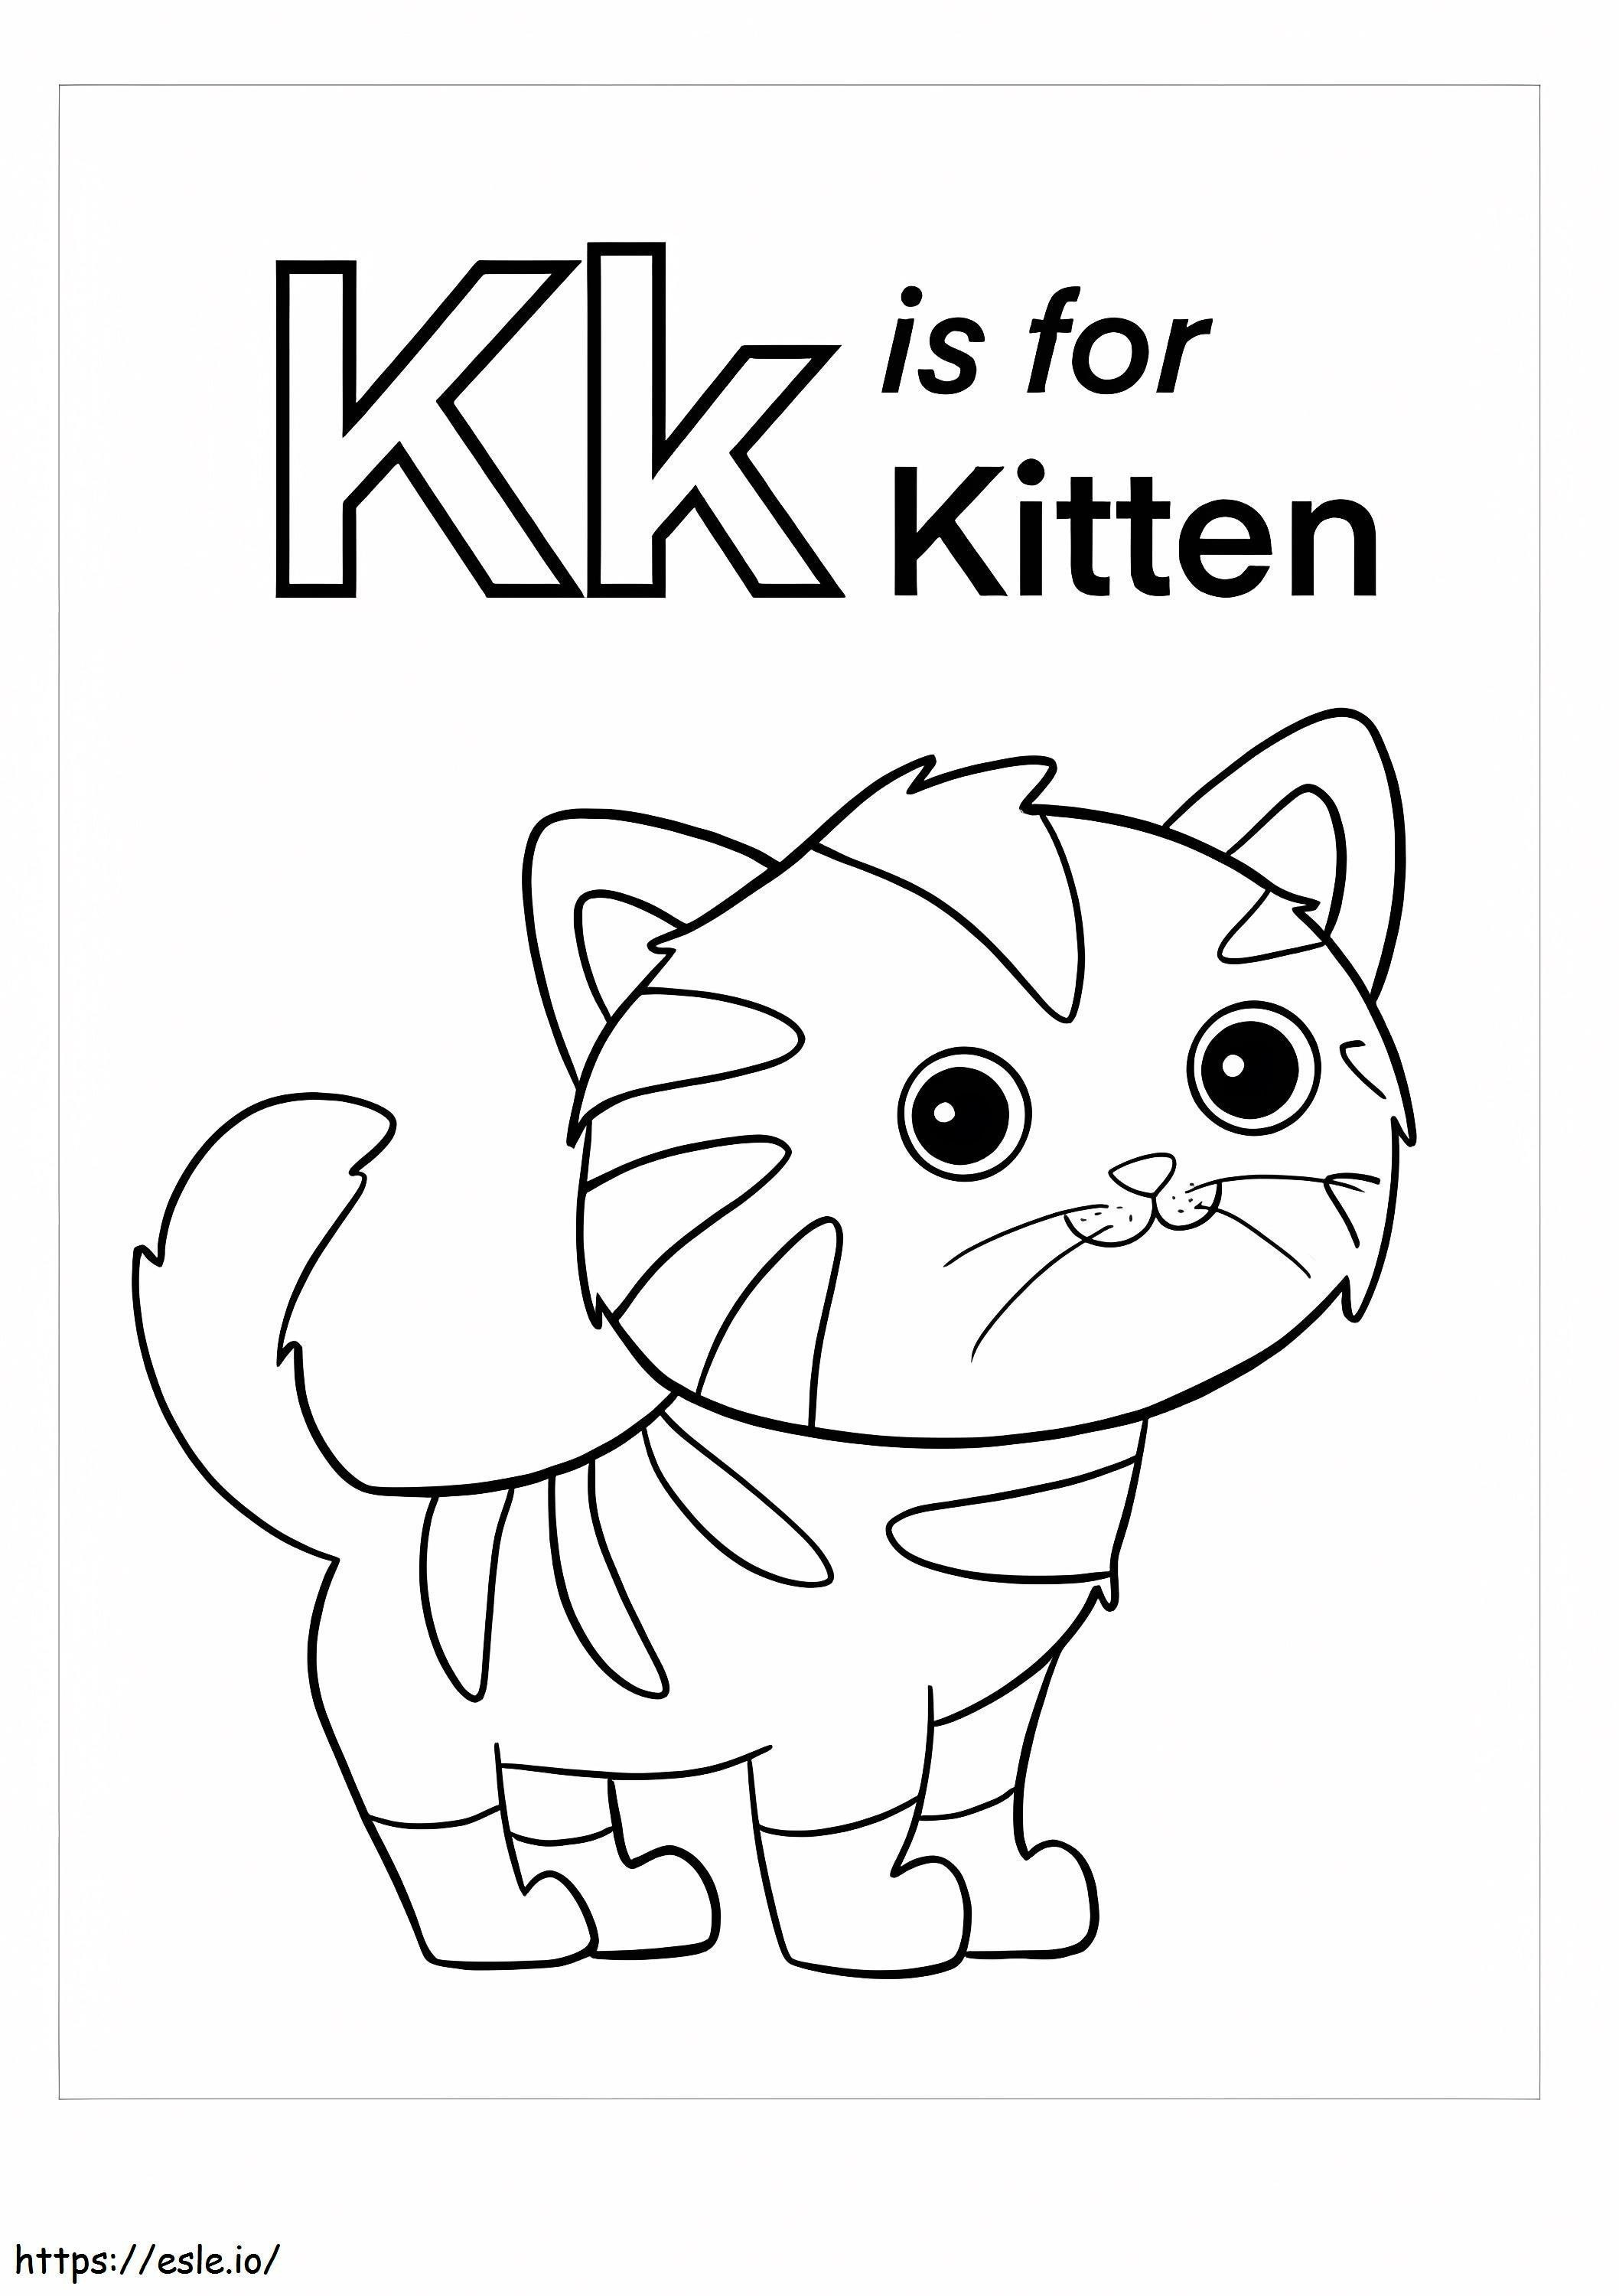 K é para gatinho para colorir